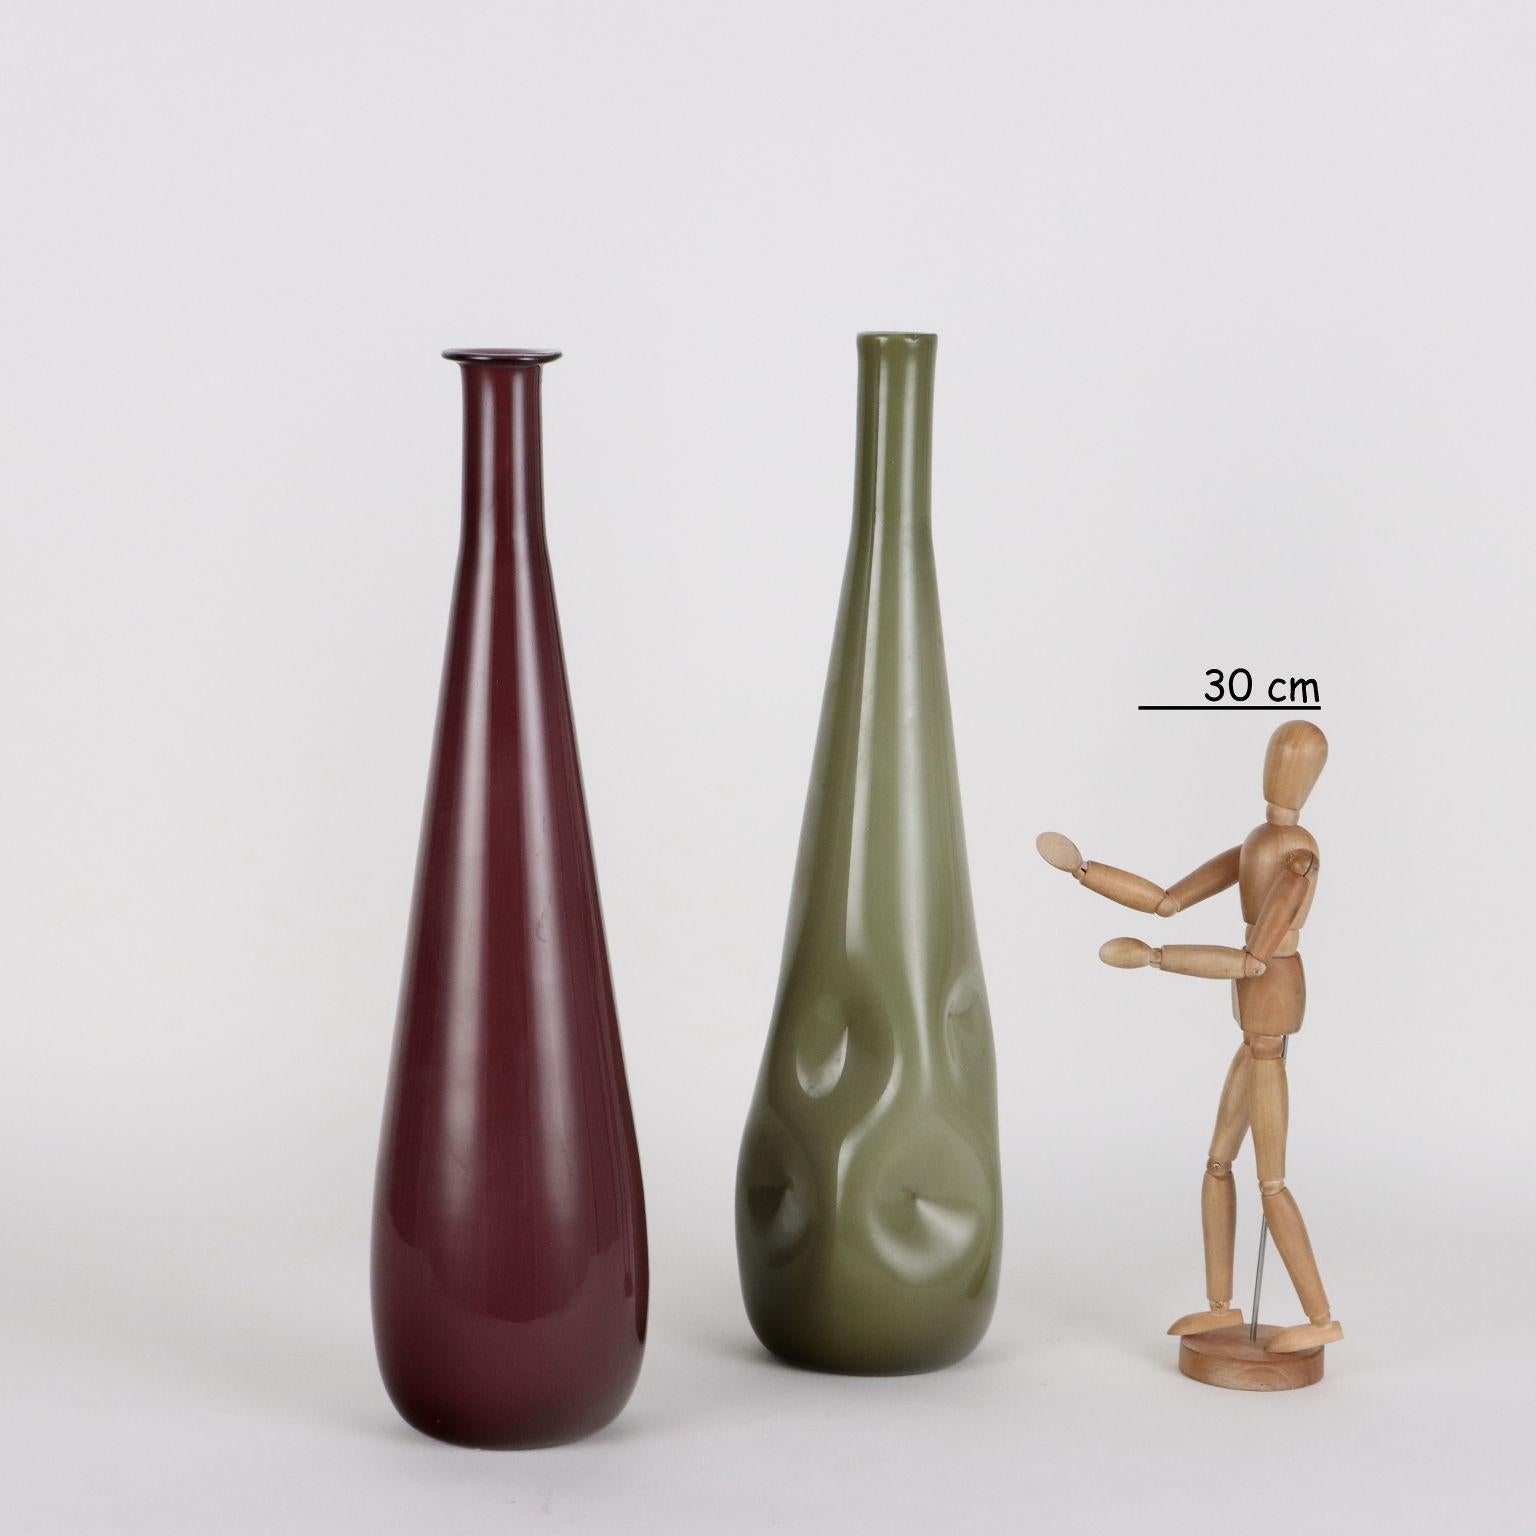 Zwei Vasen aus überfangenem Glas in verschiedenen Farben und Formen. Murano Herstellung.